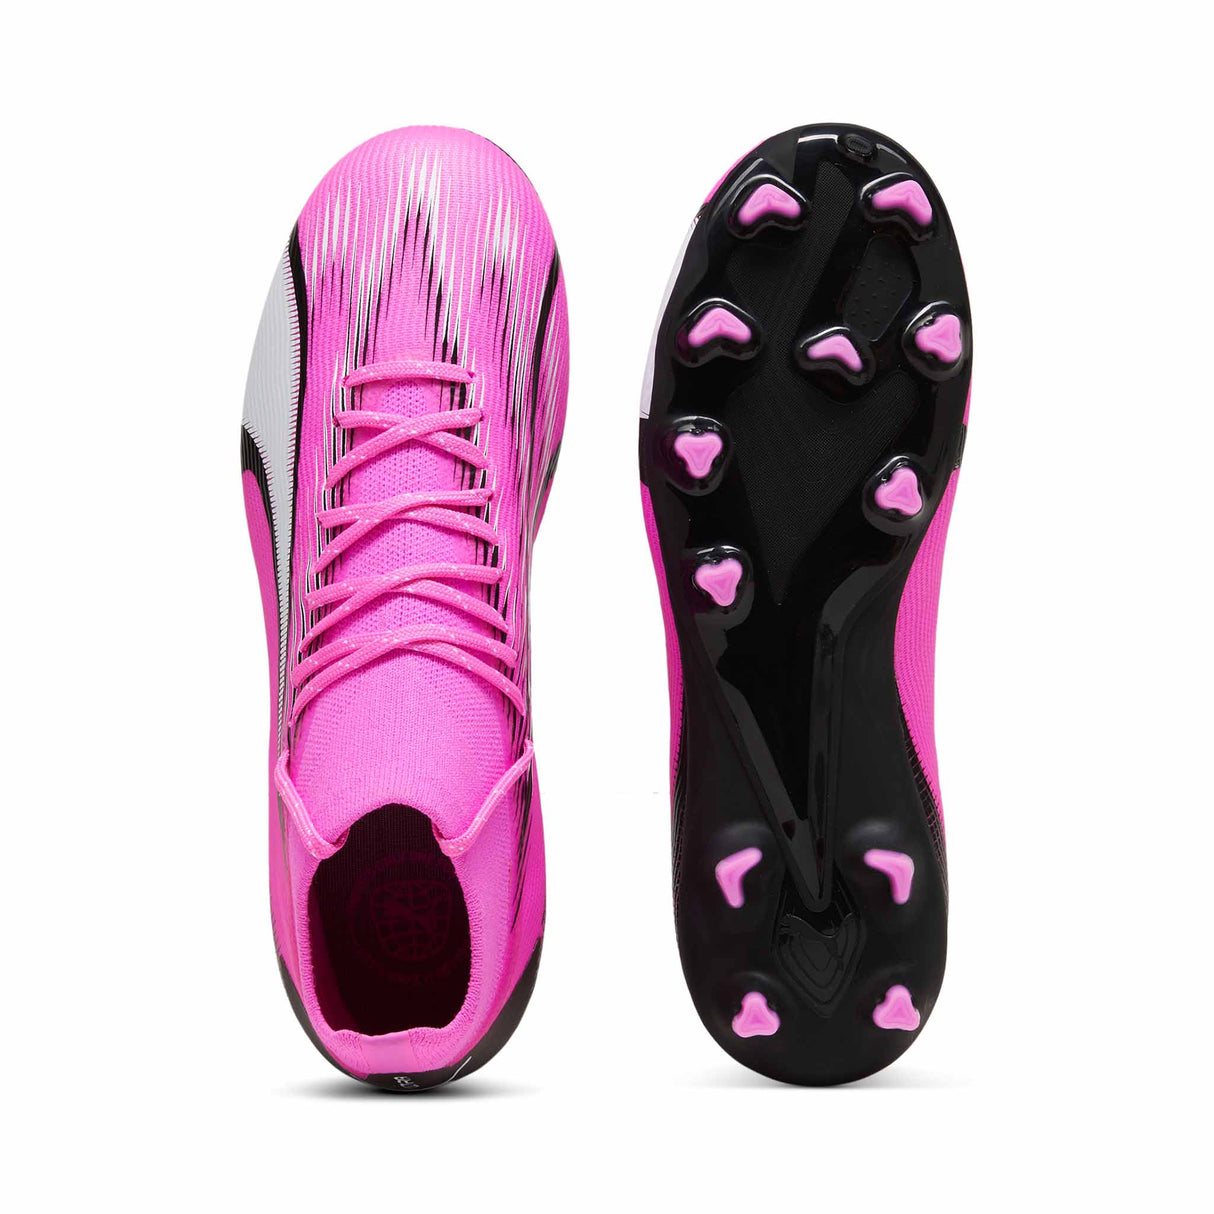 Puma Ultra Pro FG/AG chaussures de soccer à crampons junior - Poison Pink / Puma White / Puma Black